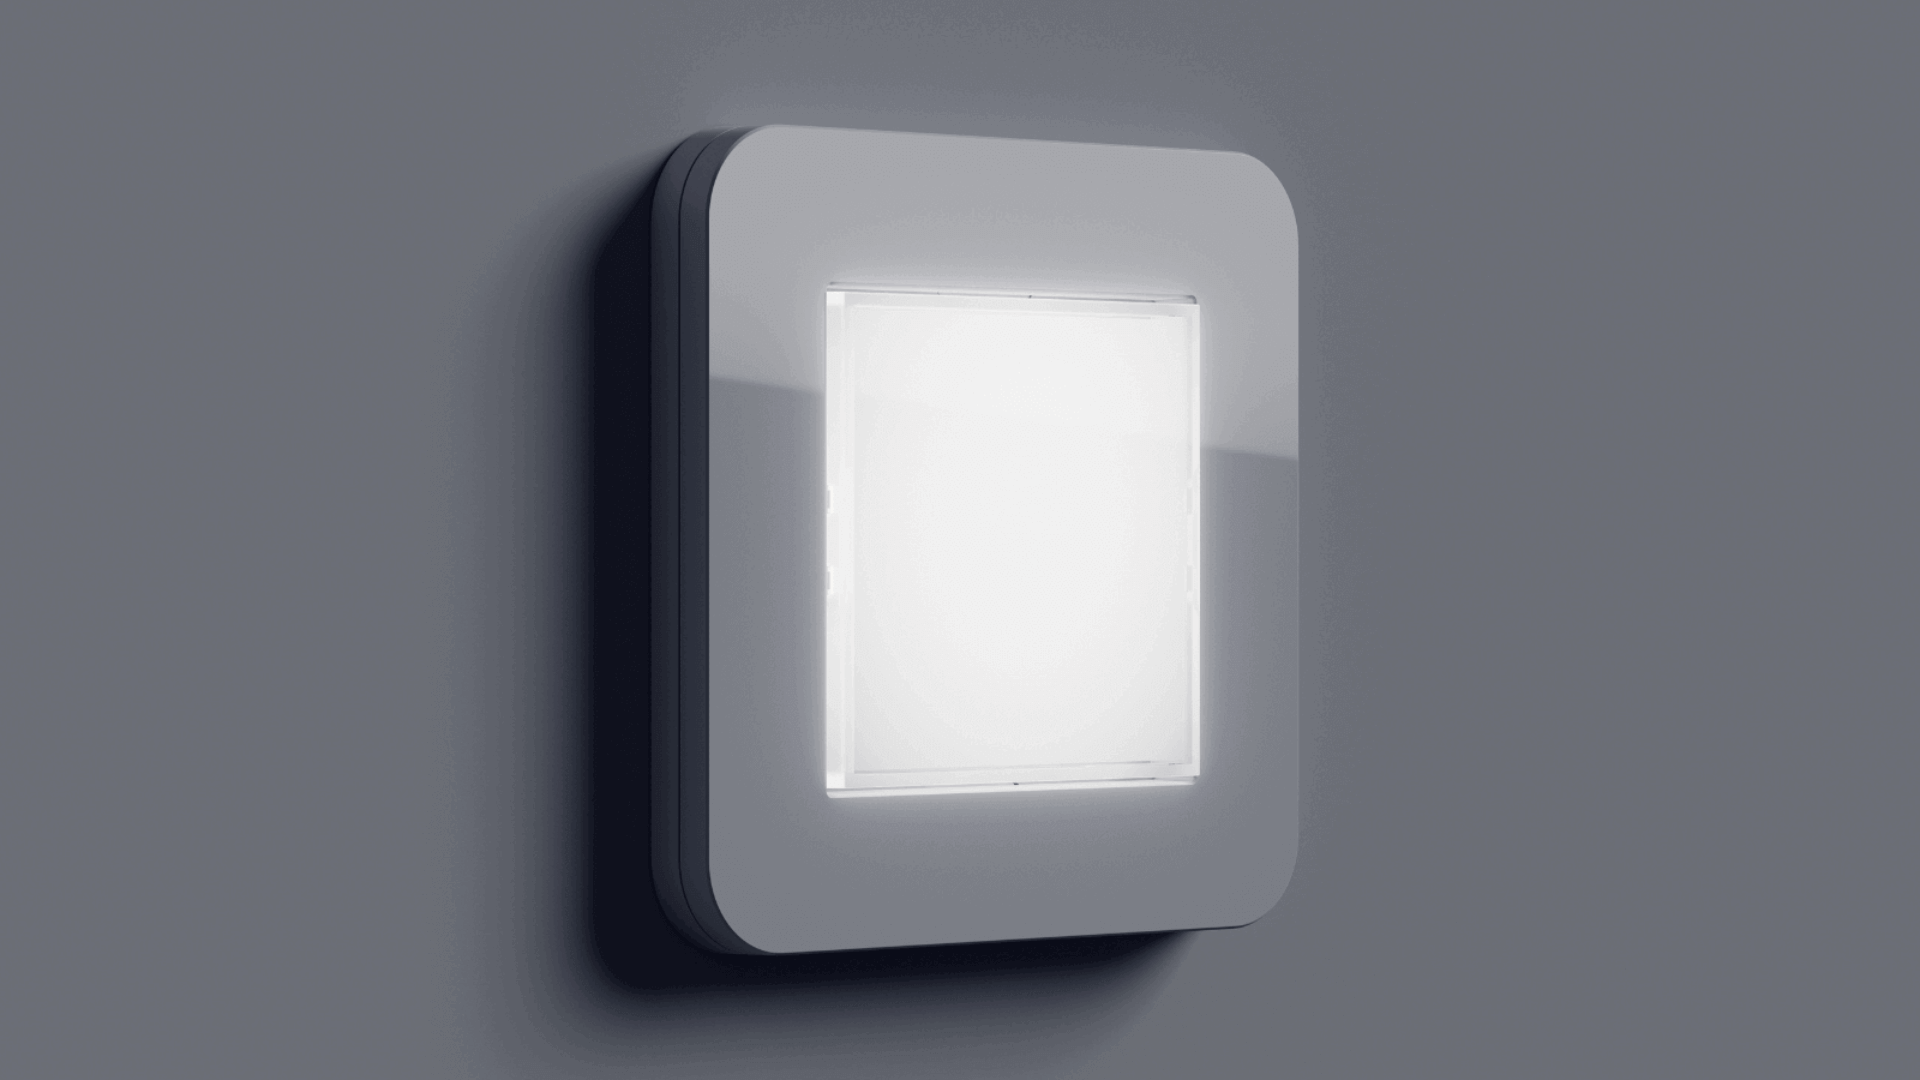 Nachts nie mehr nach dem Lichtschalter suchen: Die Gira LED-Orientierungsleuchte sorgt für Orientierung und Trittsicherheit im Dunkeln. Mehr zum Produkt ➦